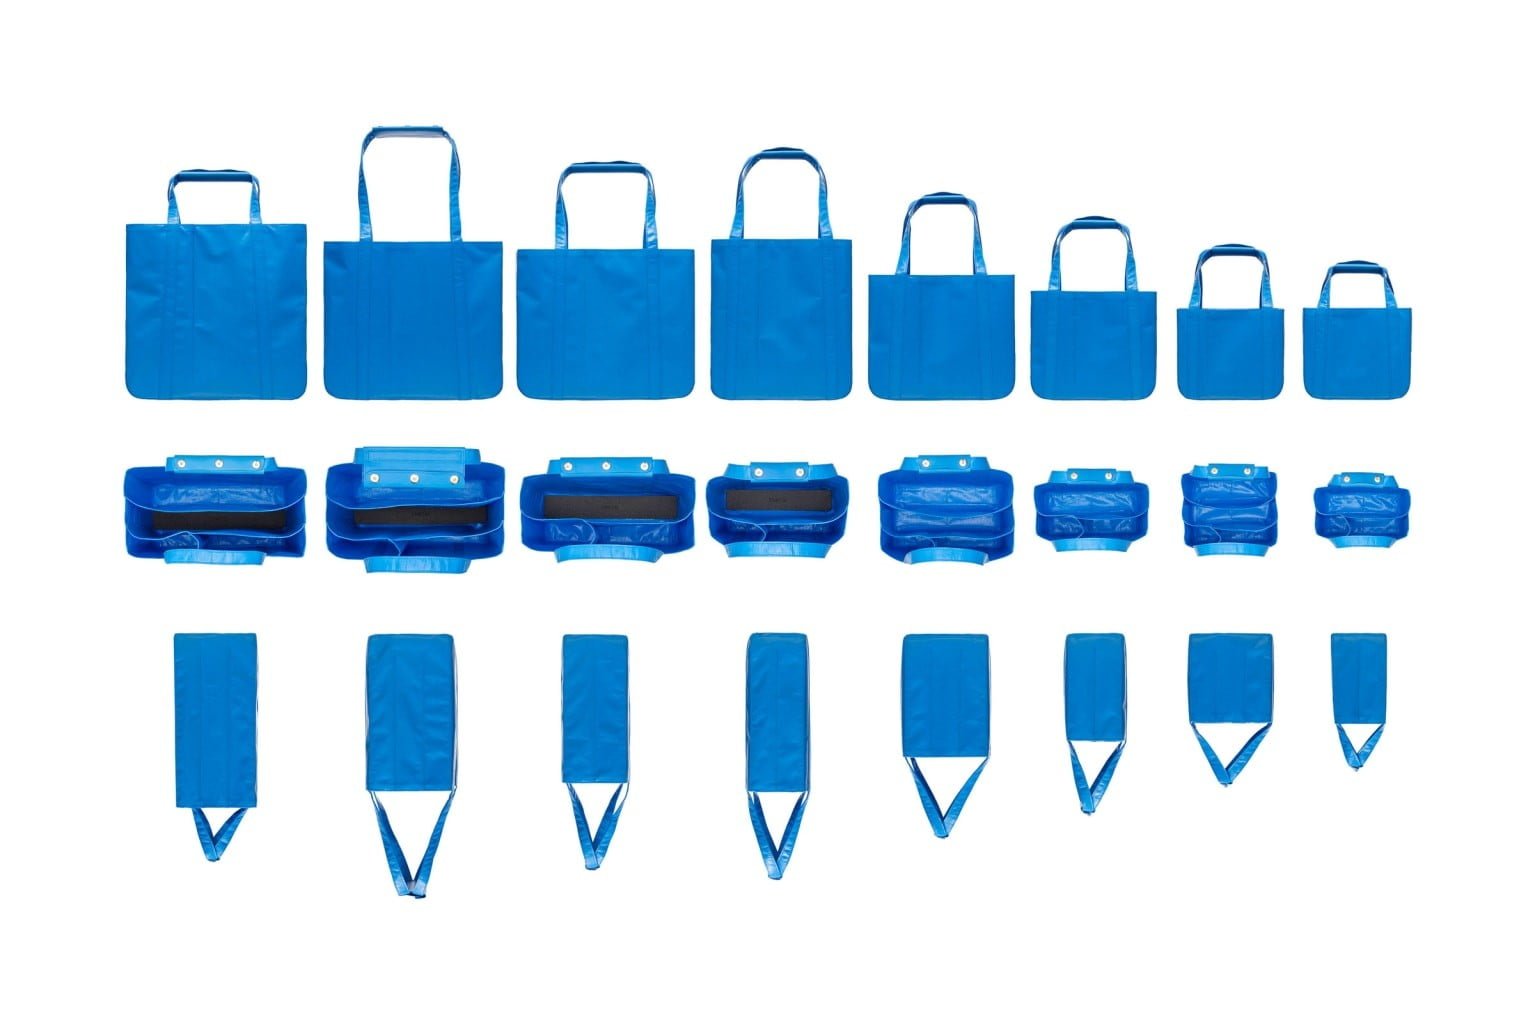 # 高階版藍色提袋：CHACOLI 即將於 Dover Street Market Ginza 發售限定系列 11